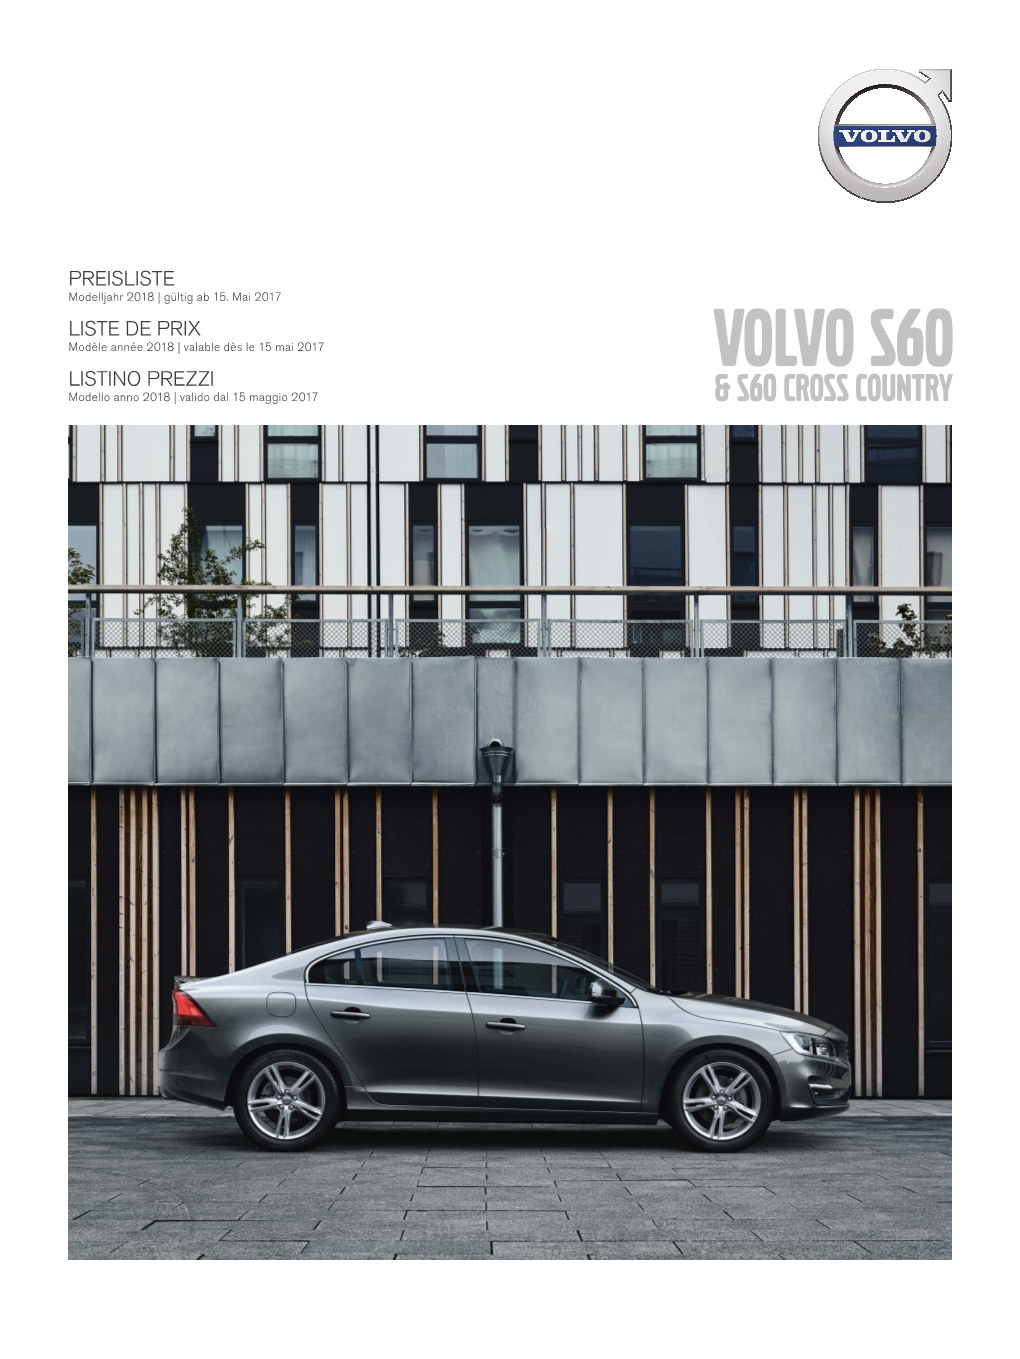 VOLVO S60 LISTINO PREZZI Modello Anno 2018 | Valido Dal 15 Maggio 2017 & S60 Cross Country Volvo S60 / S60 Cross Country Preise / Prix / Prezzi